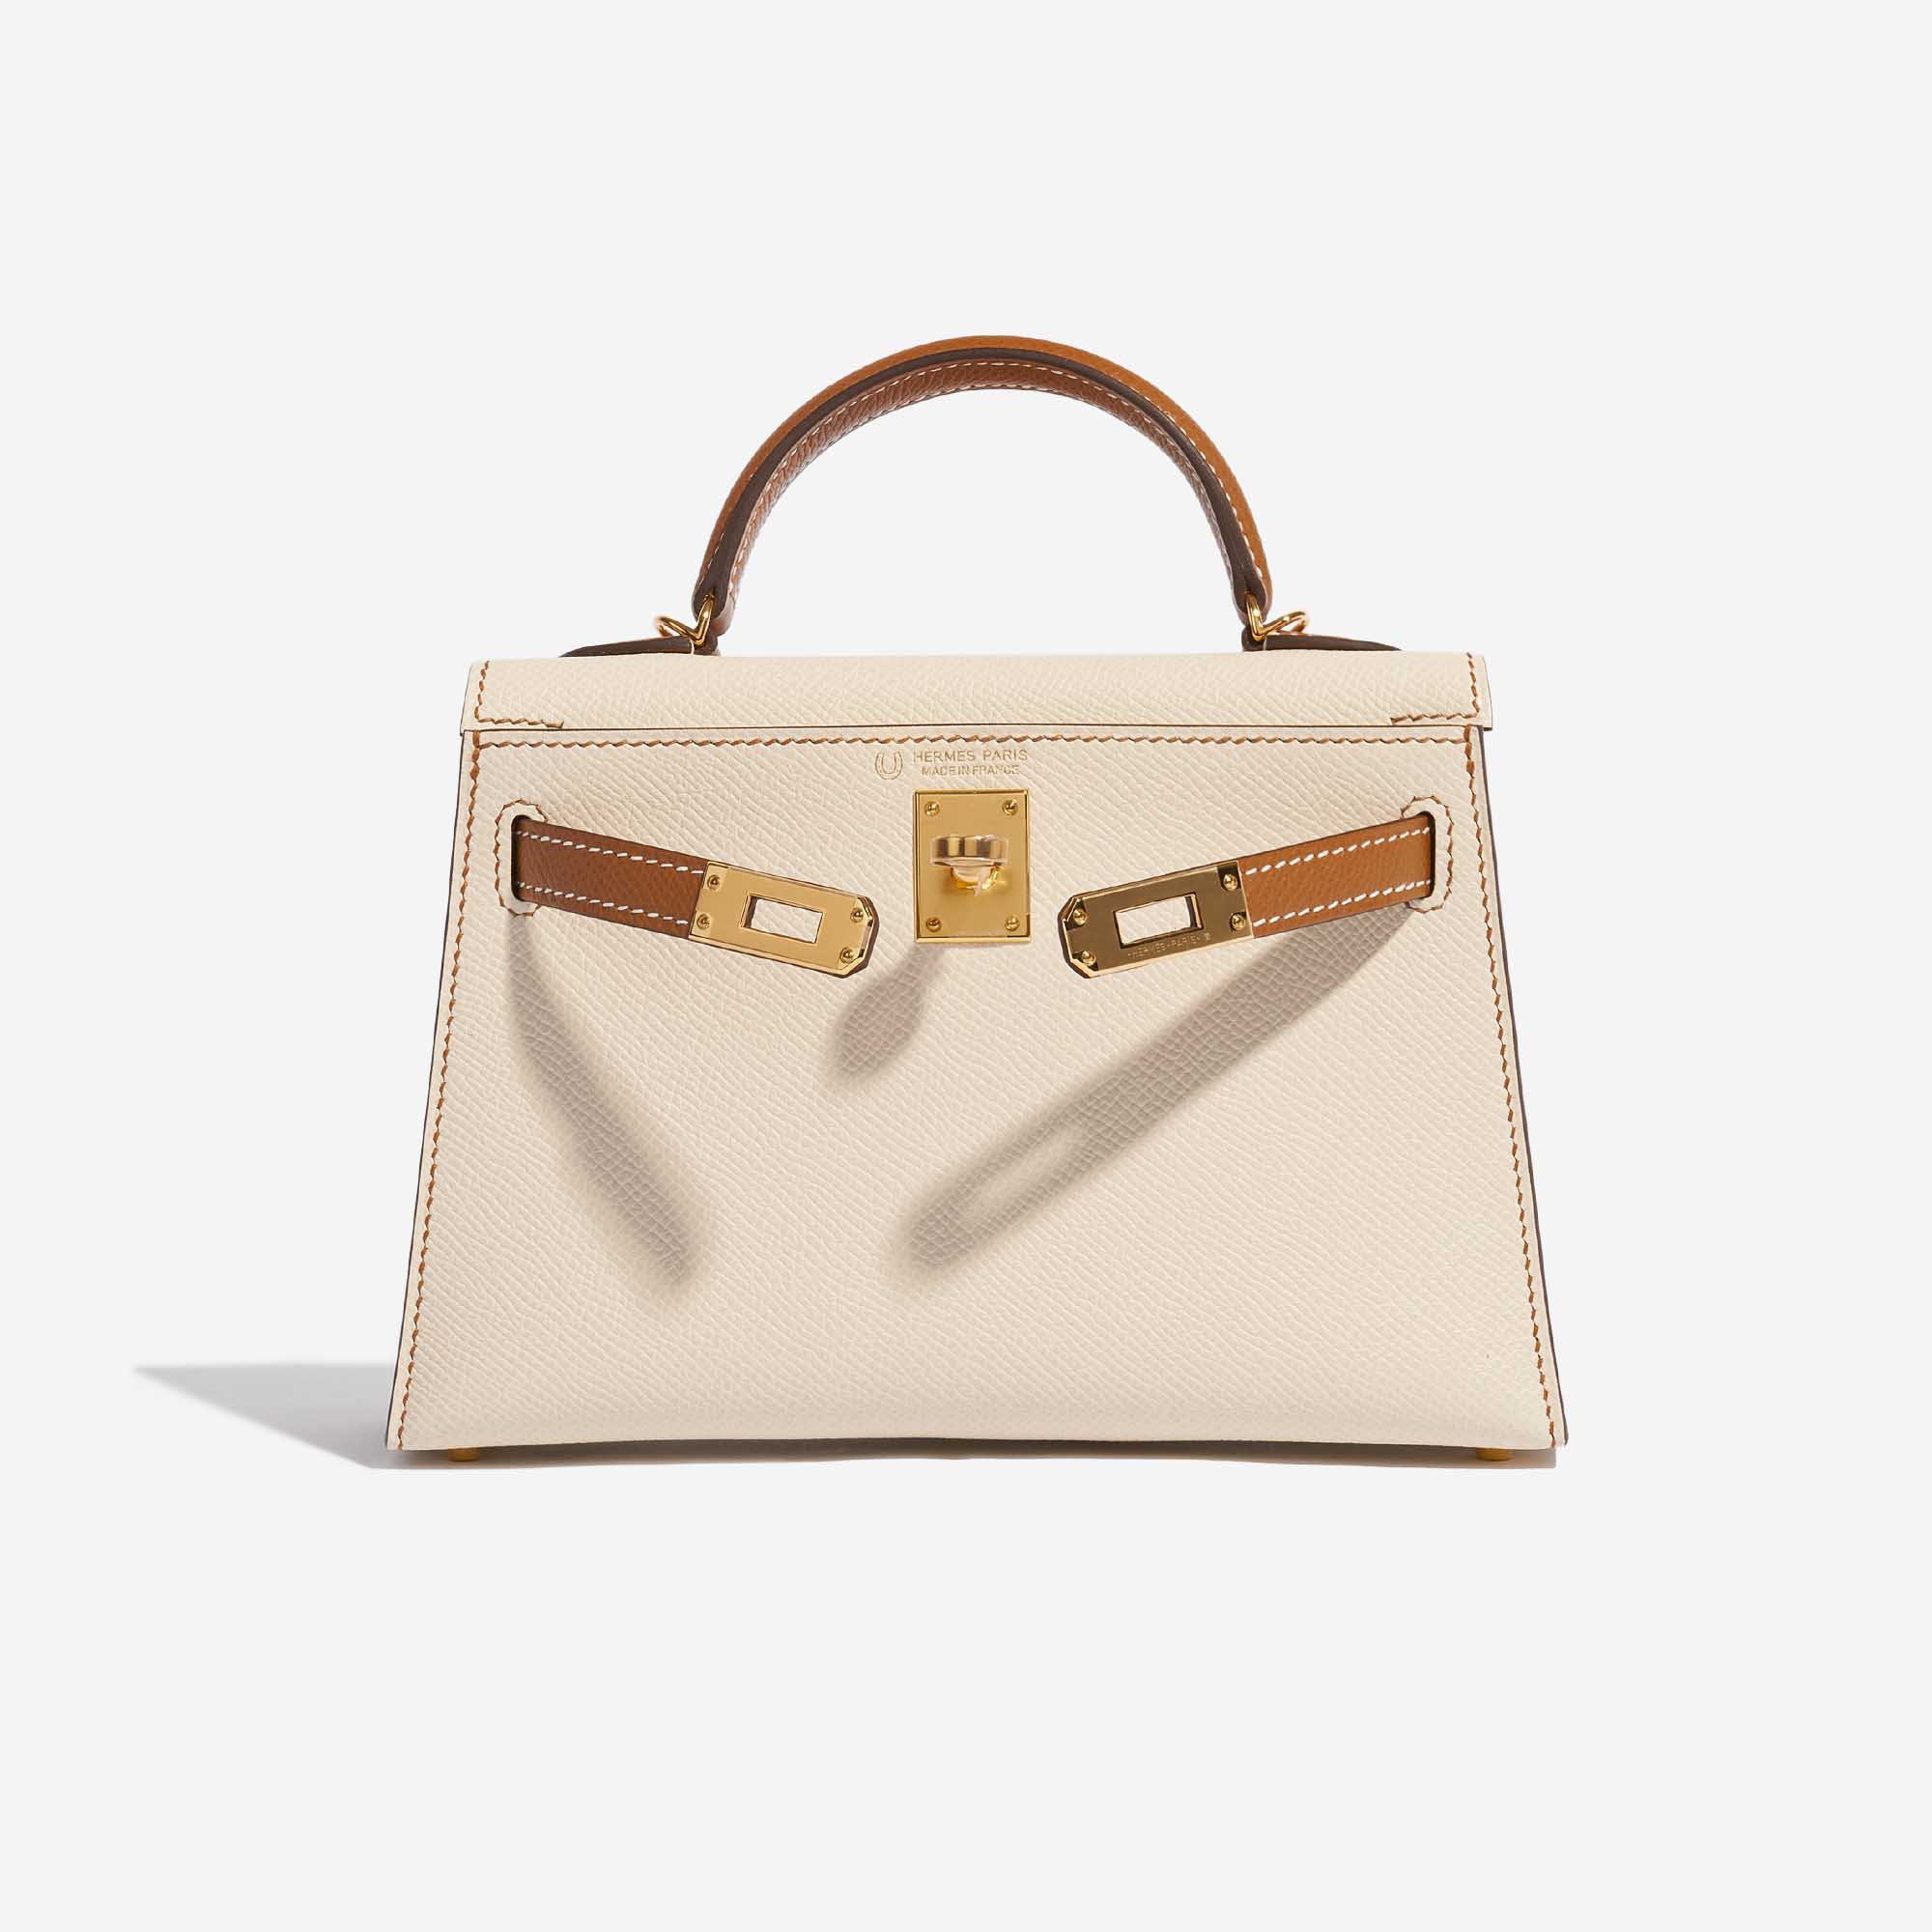 Pre-owned Hermès Tasche Kelly Mini Epsom Craie / Gold Braun, Grau Front Open | Verkaufen Sie Ihre Designer-Tasche auf Saclab.com